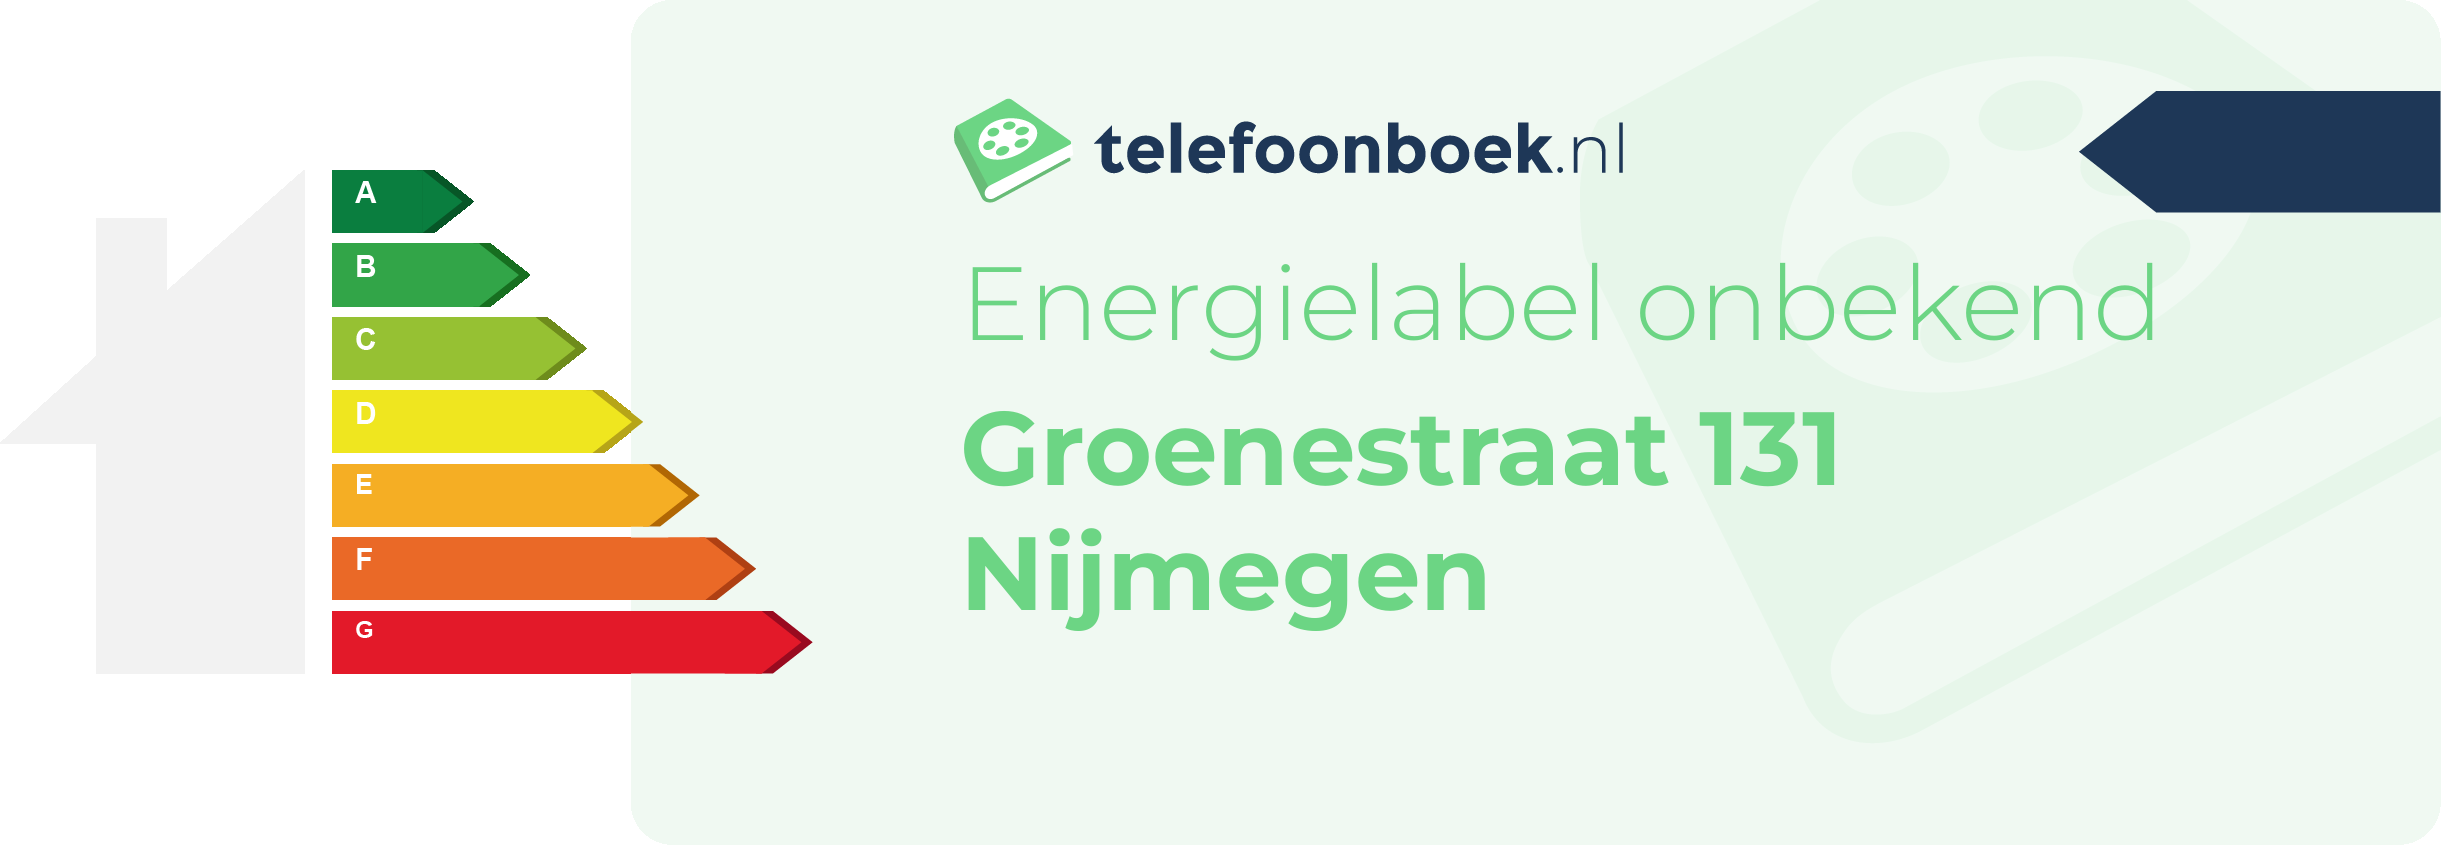 Energielabel Groenestraat 131 Nijmegen